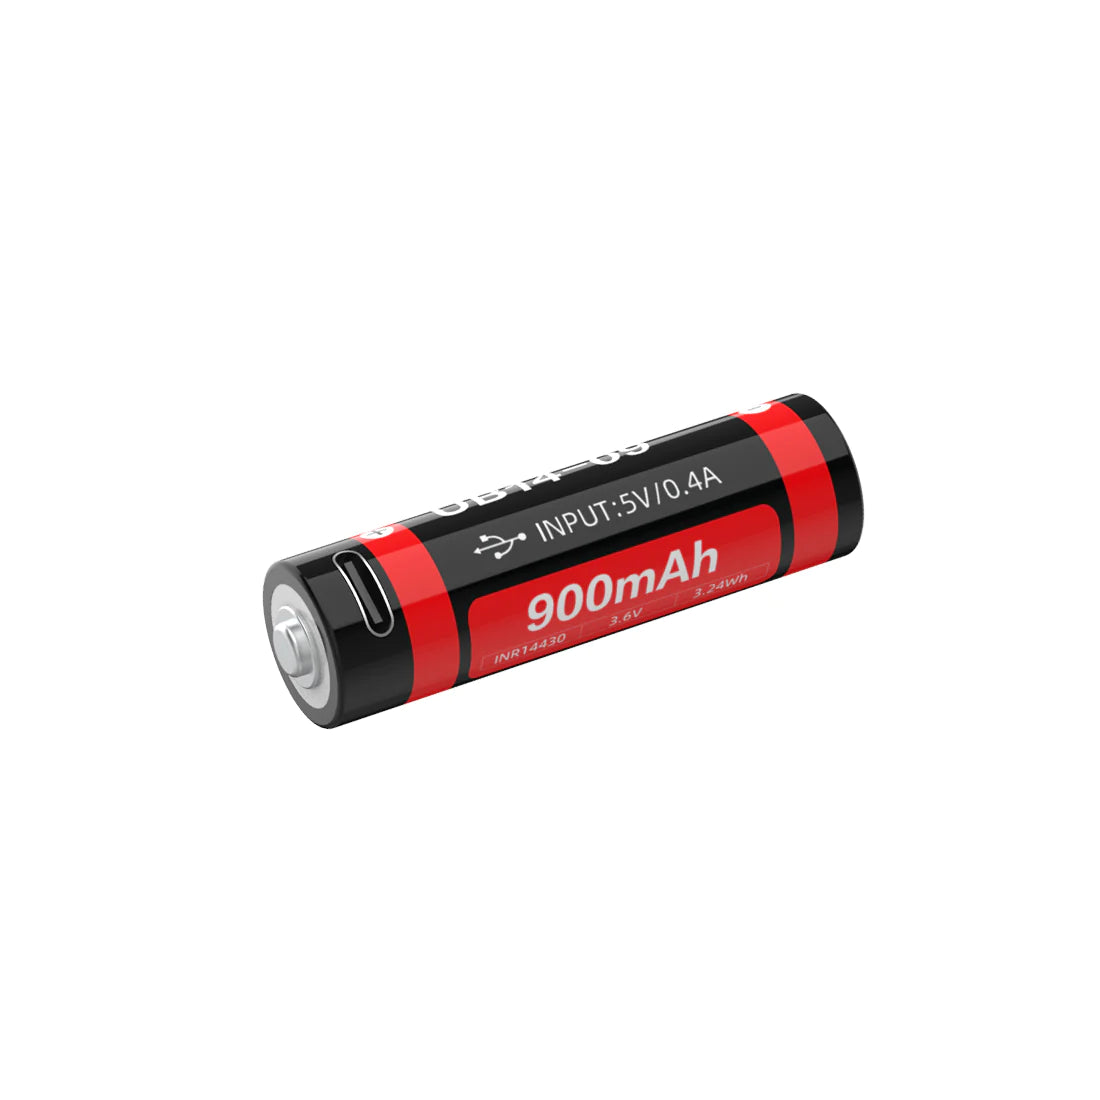 Weltool 14500 Type-C USB Rechargeable Li-ion Battery 900mAh  UB14-09